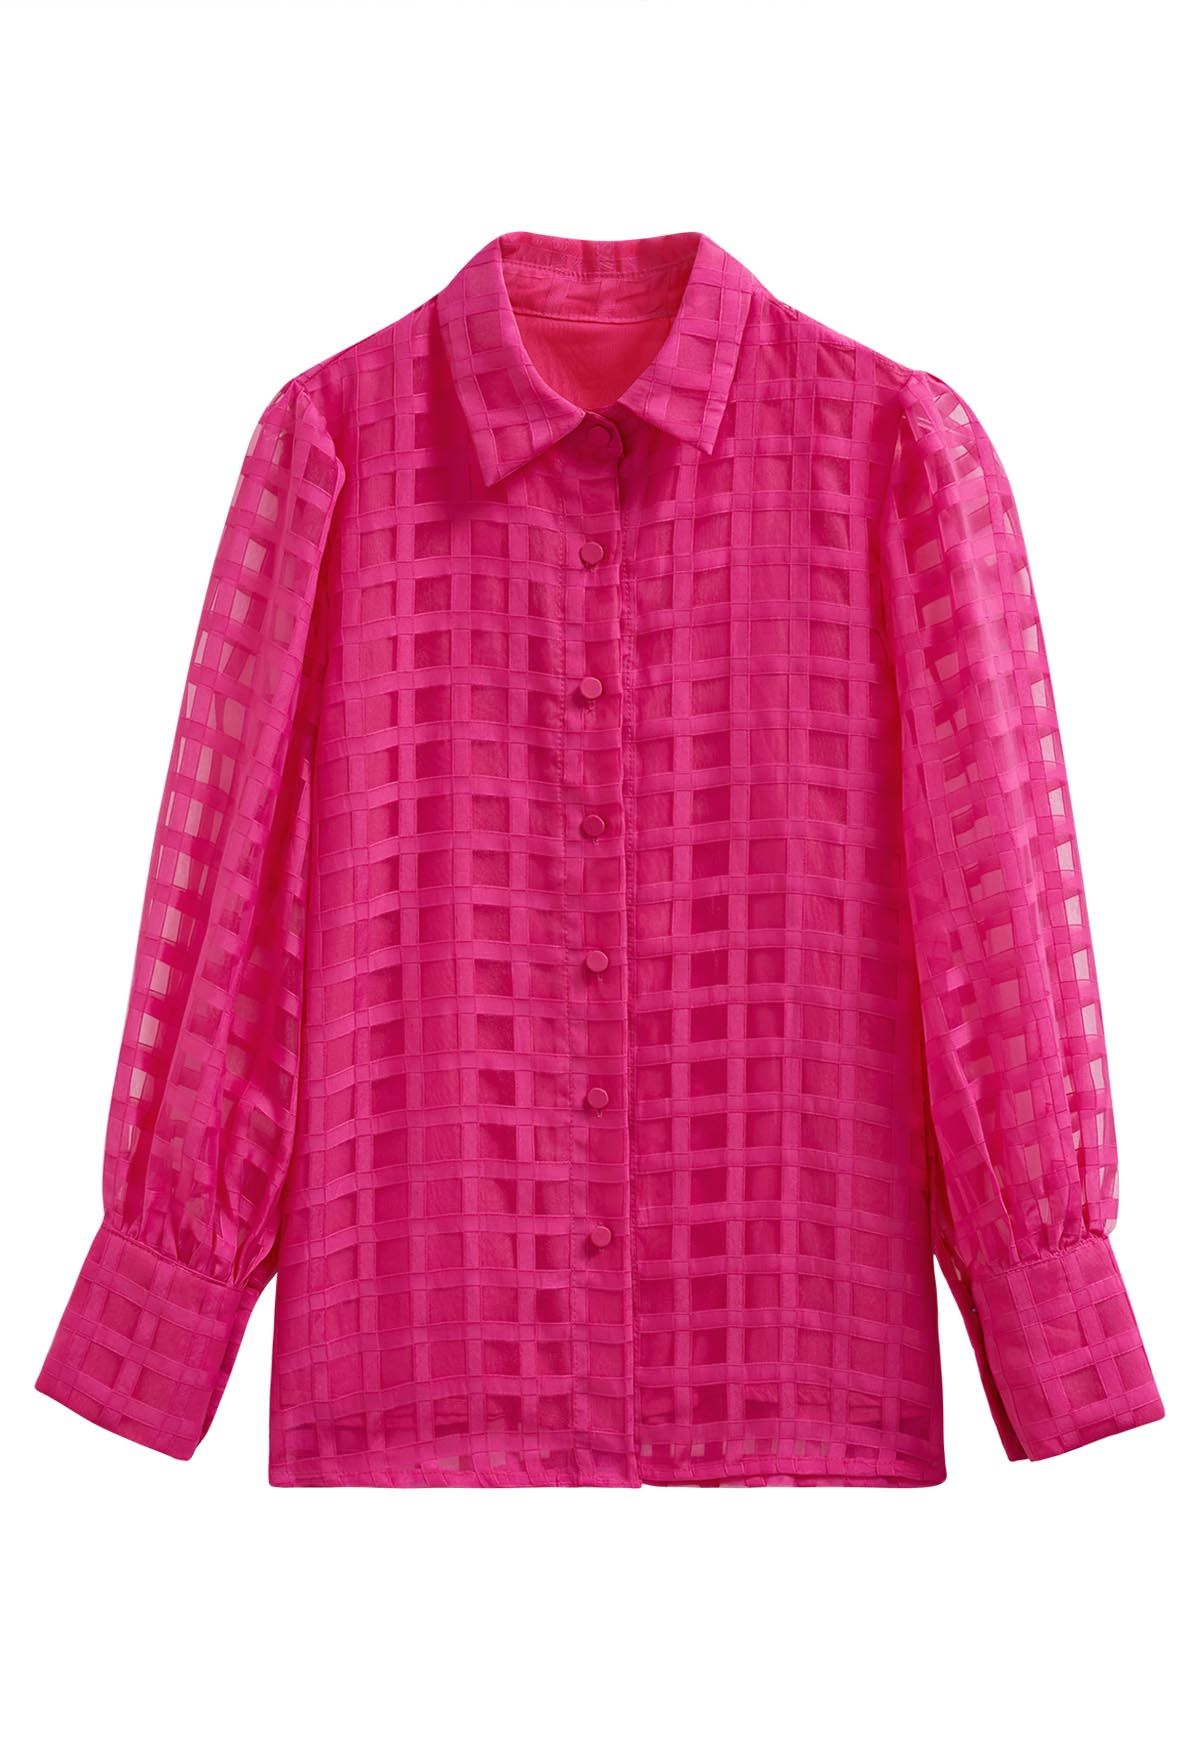 Chemise boutonnée à carreaux en rose vif